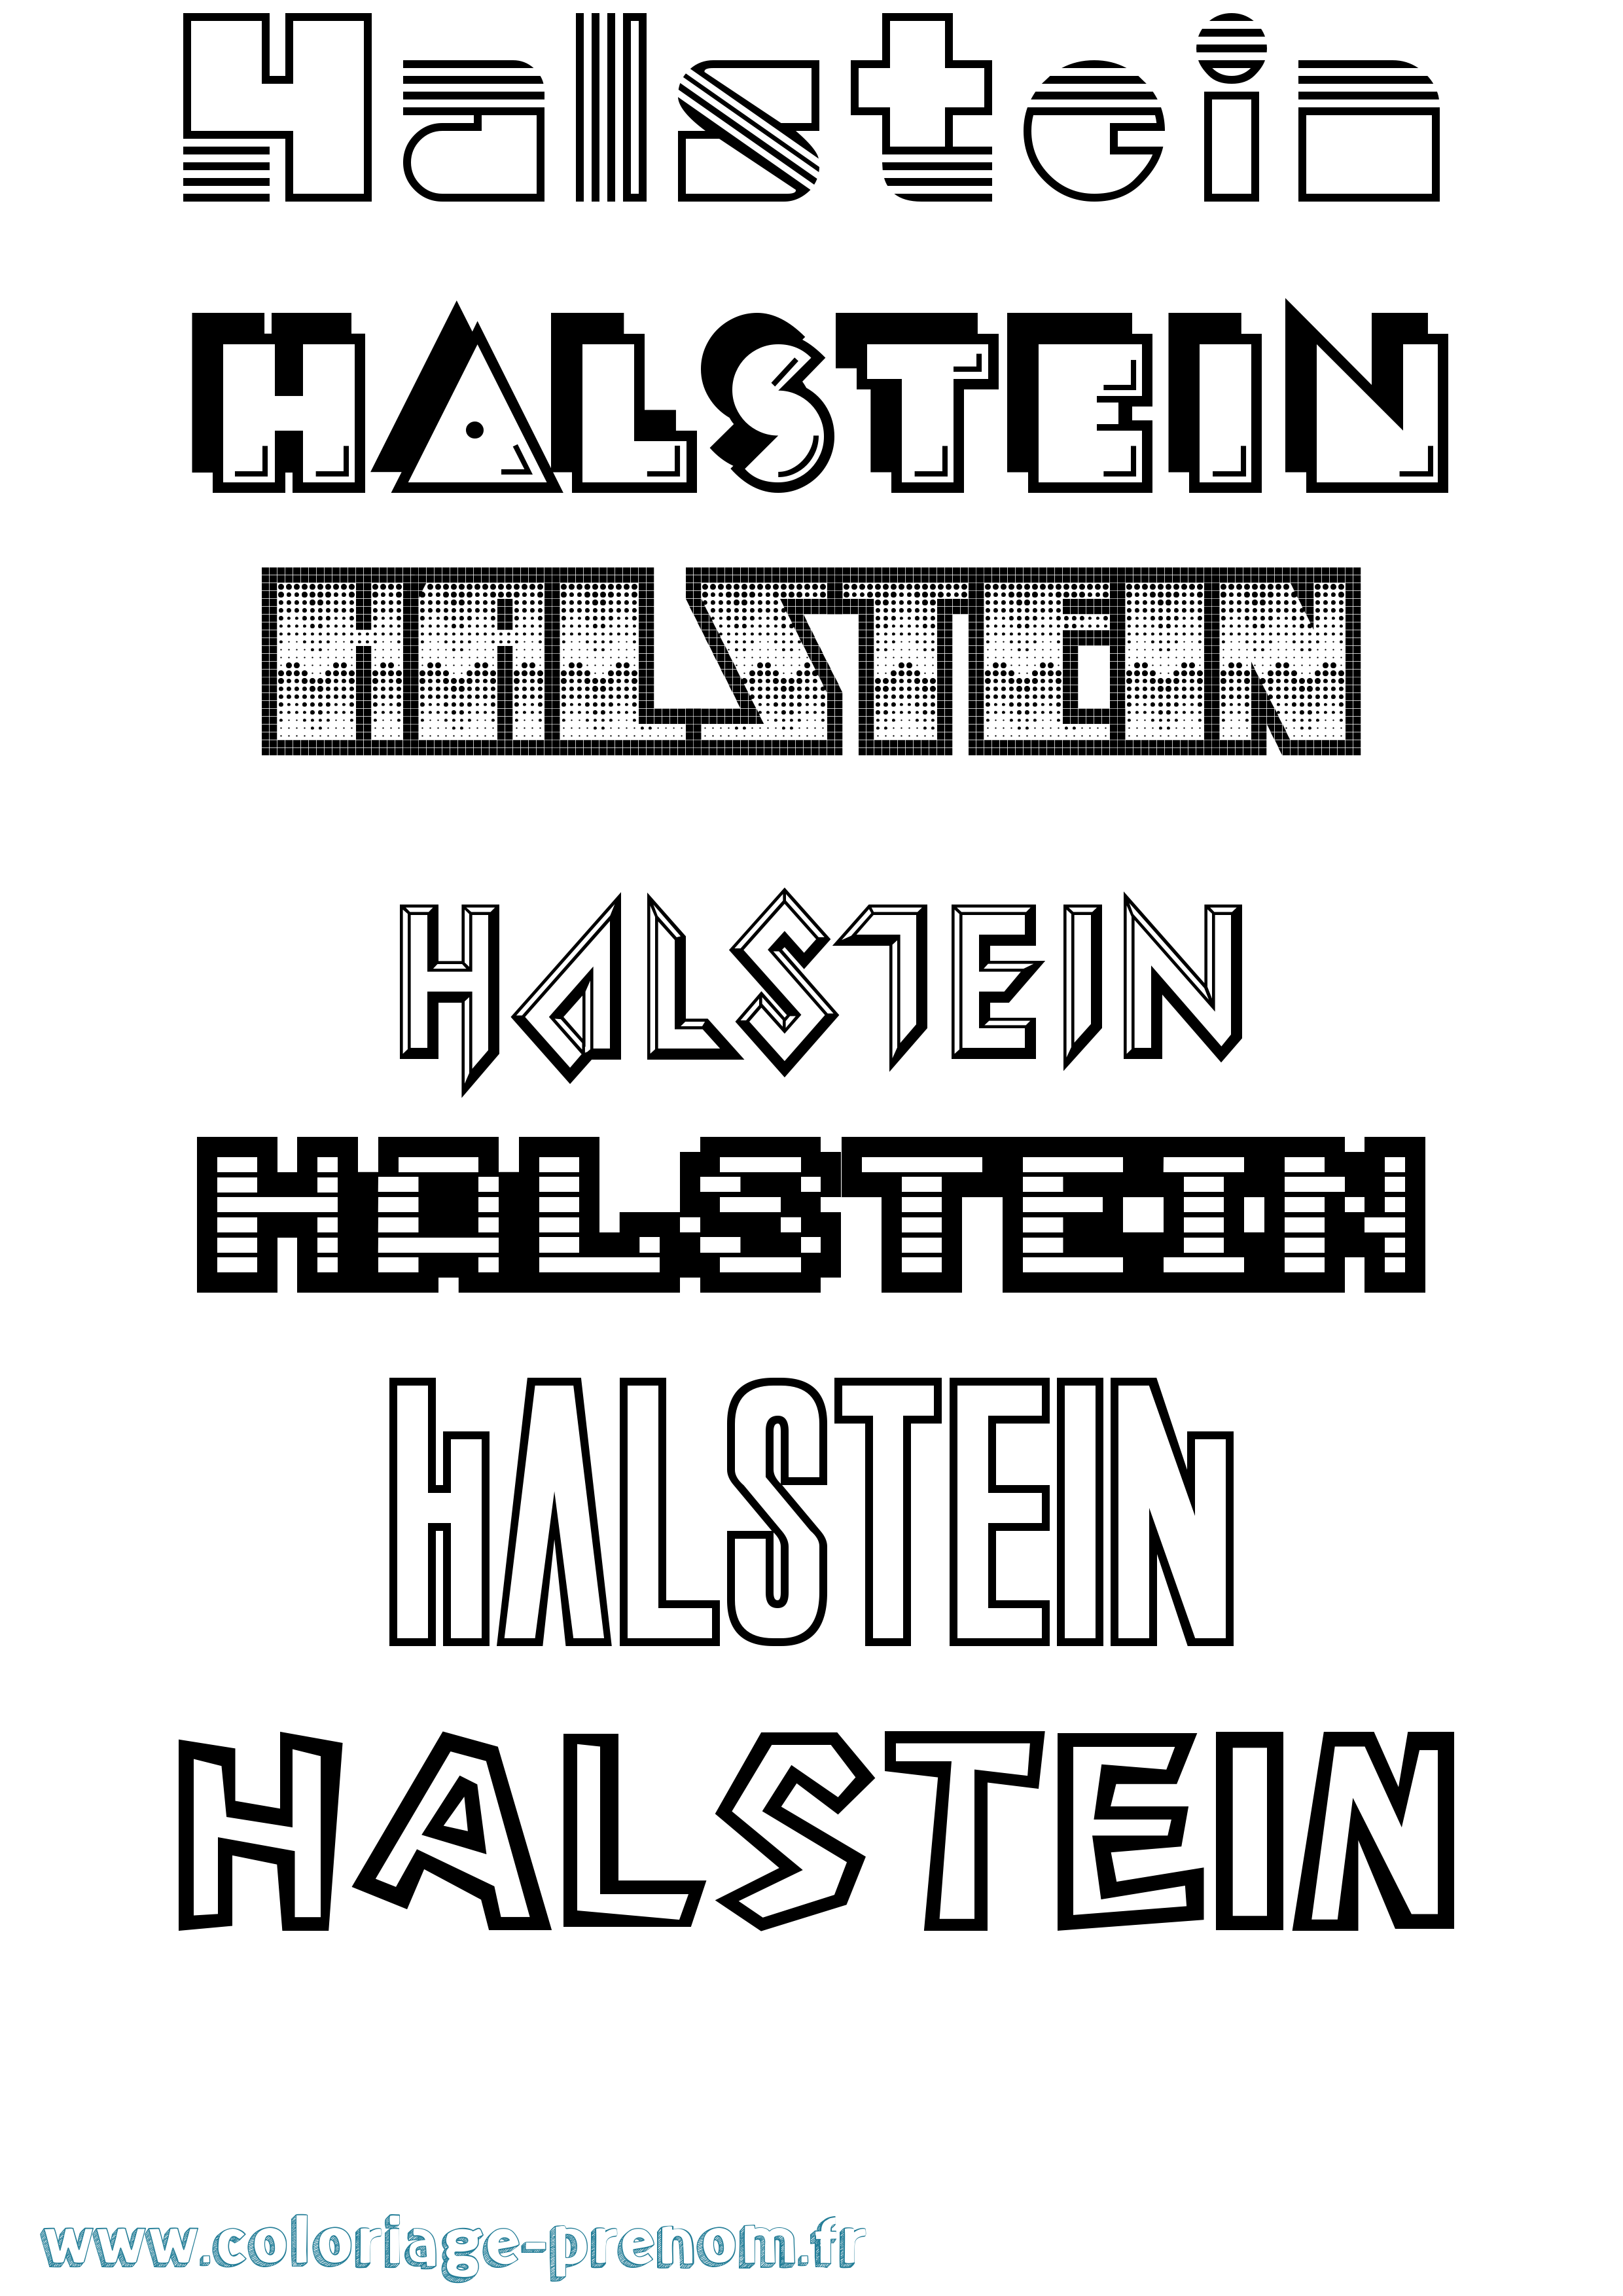 Coloriage prénom Halstein Jeux Vidéos